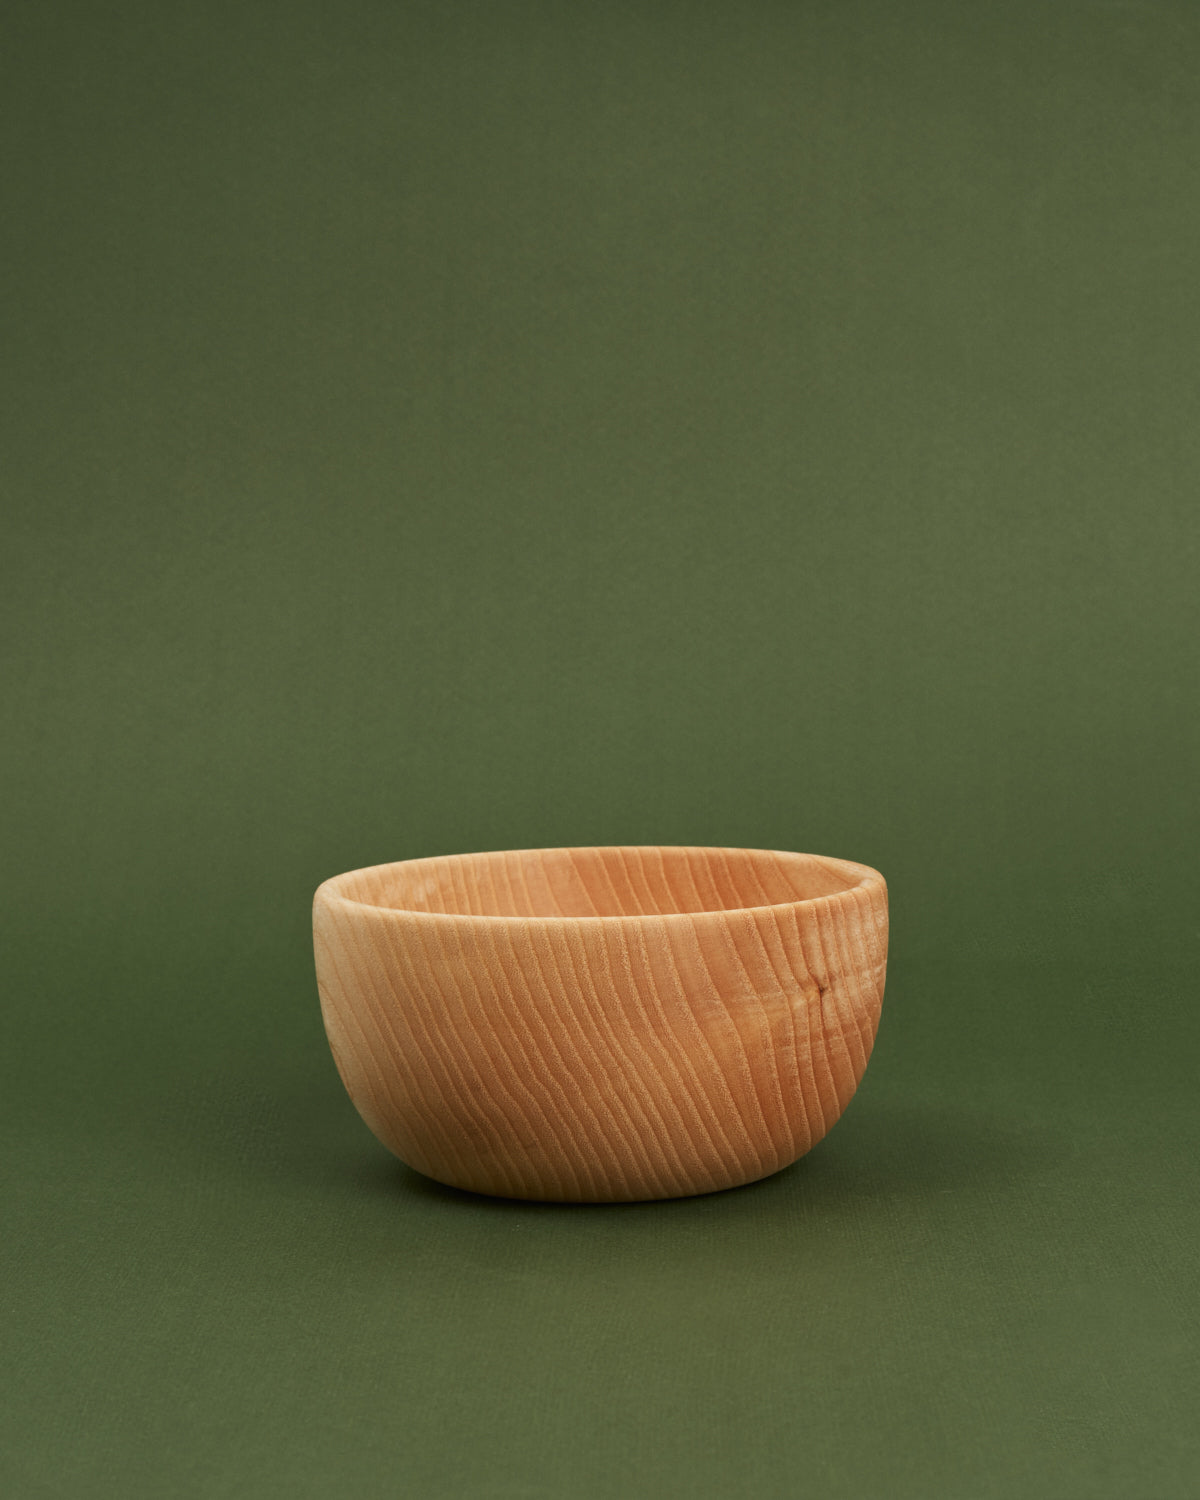 Small wood ash bowl